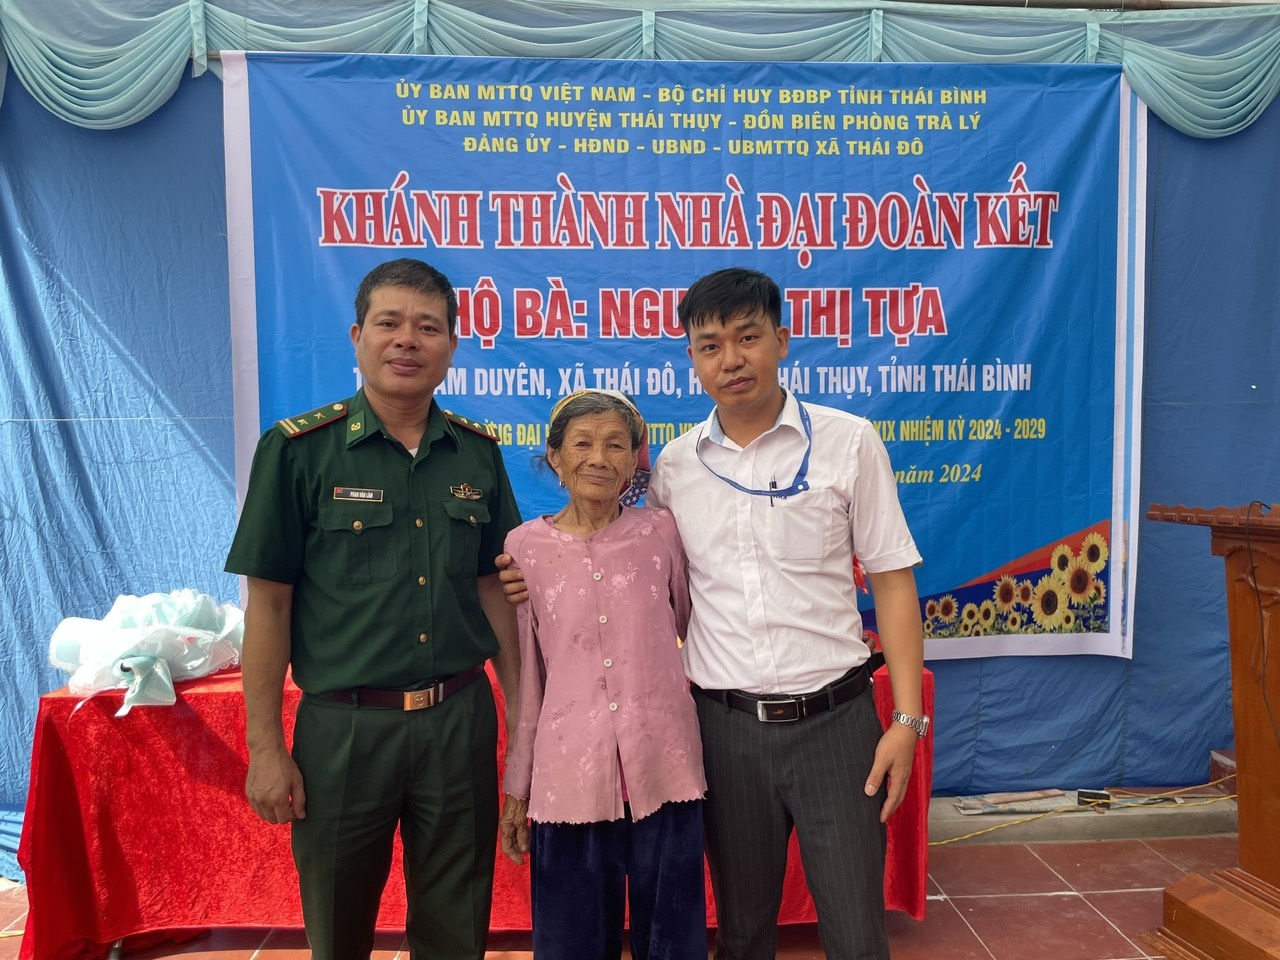 NMNĐ Thái Bình 2 hỗ trợ xây dựng nhà Đại đoàn kết trên địa bàn tỉnh Thái Bình